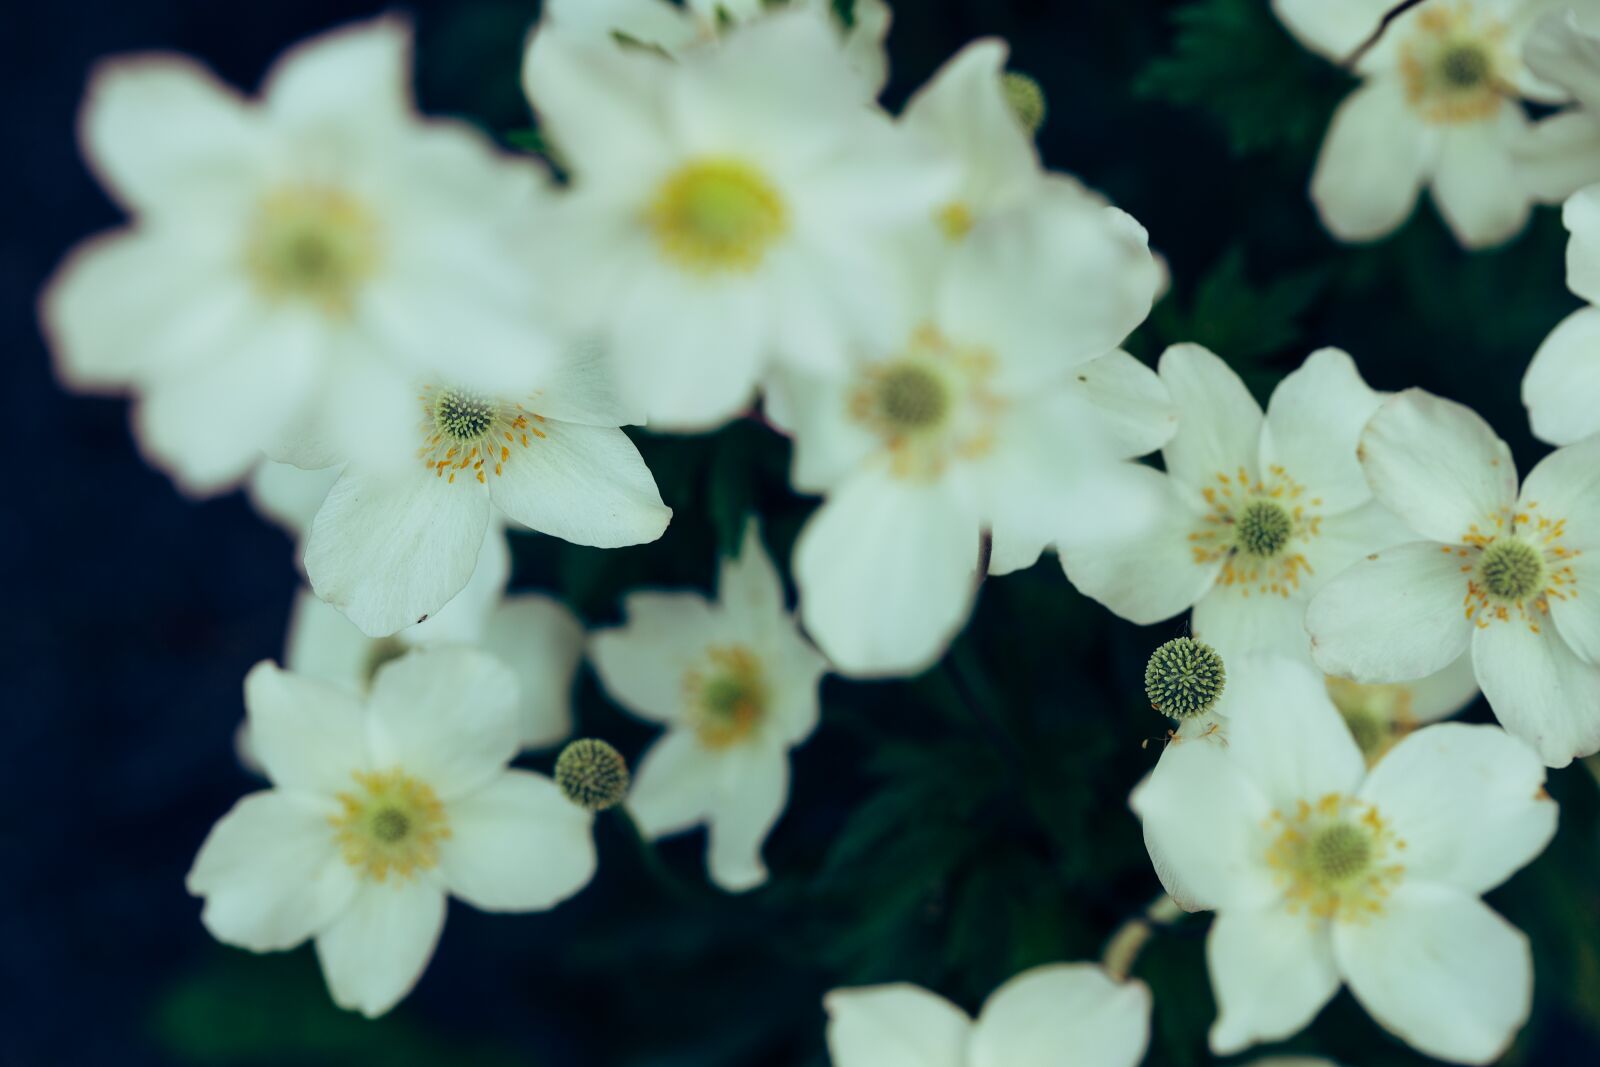 Canon EOS R sample photo. Flower, white, garden photography